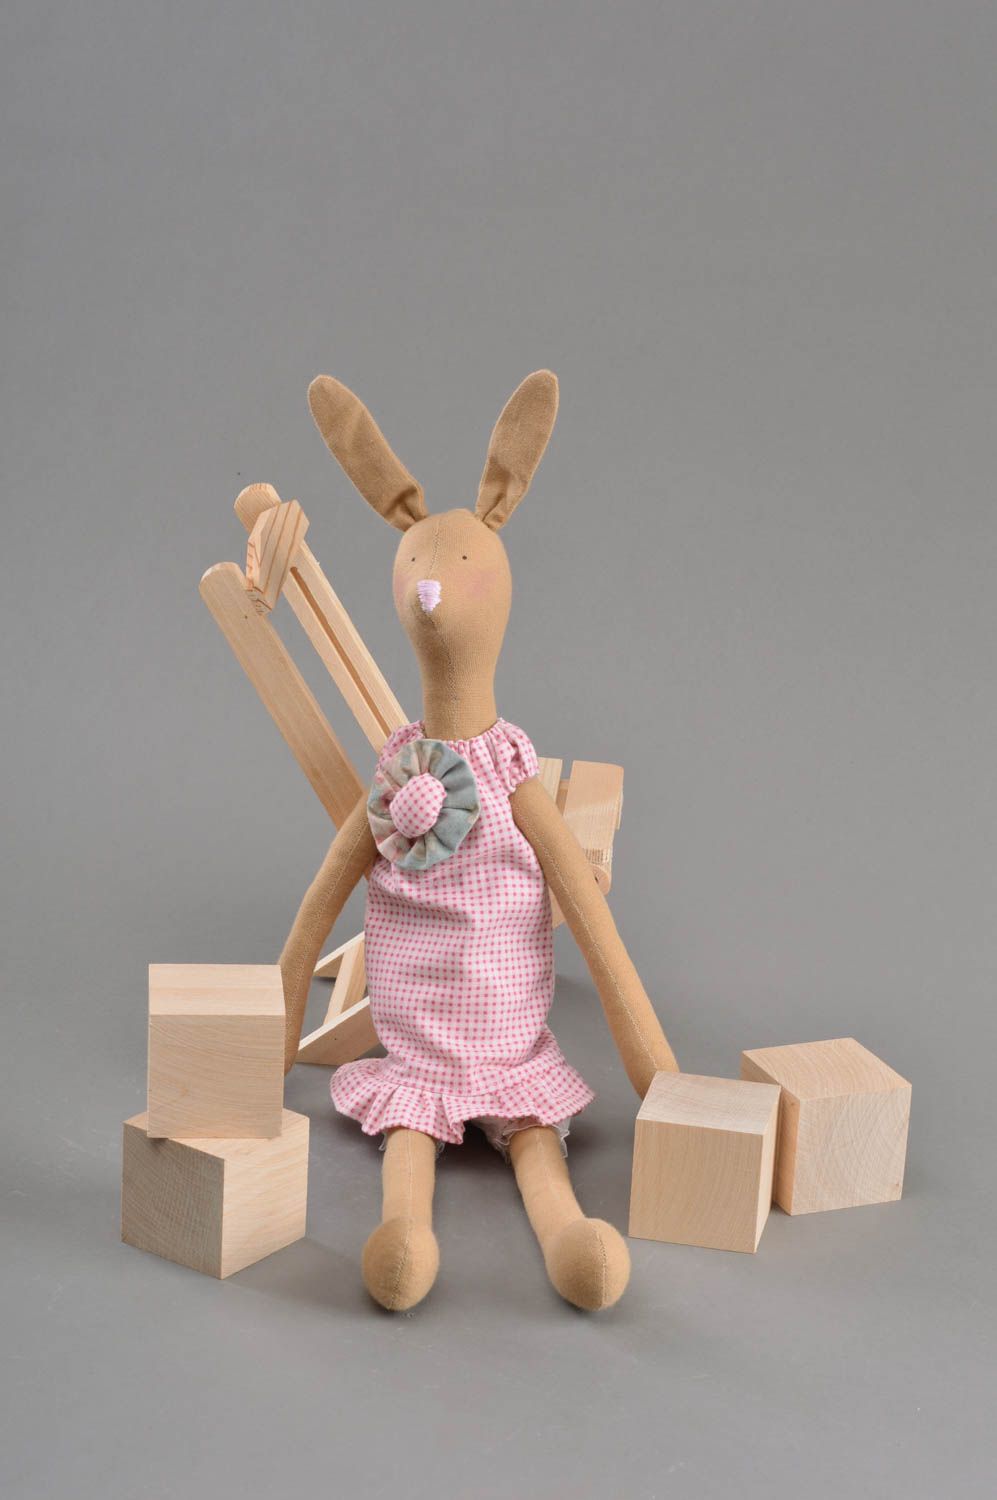 Textil Kuscheltier Hase im Trägerrock weich schön handmade Spielzeug für Kinder foto 1